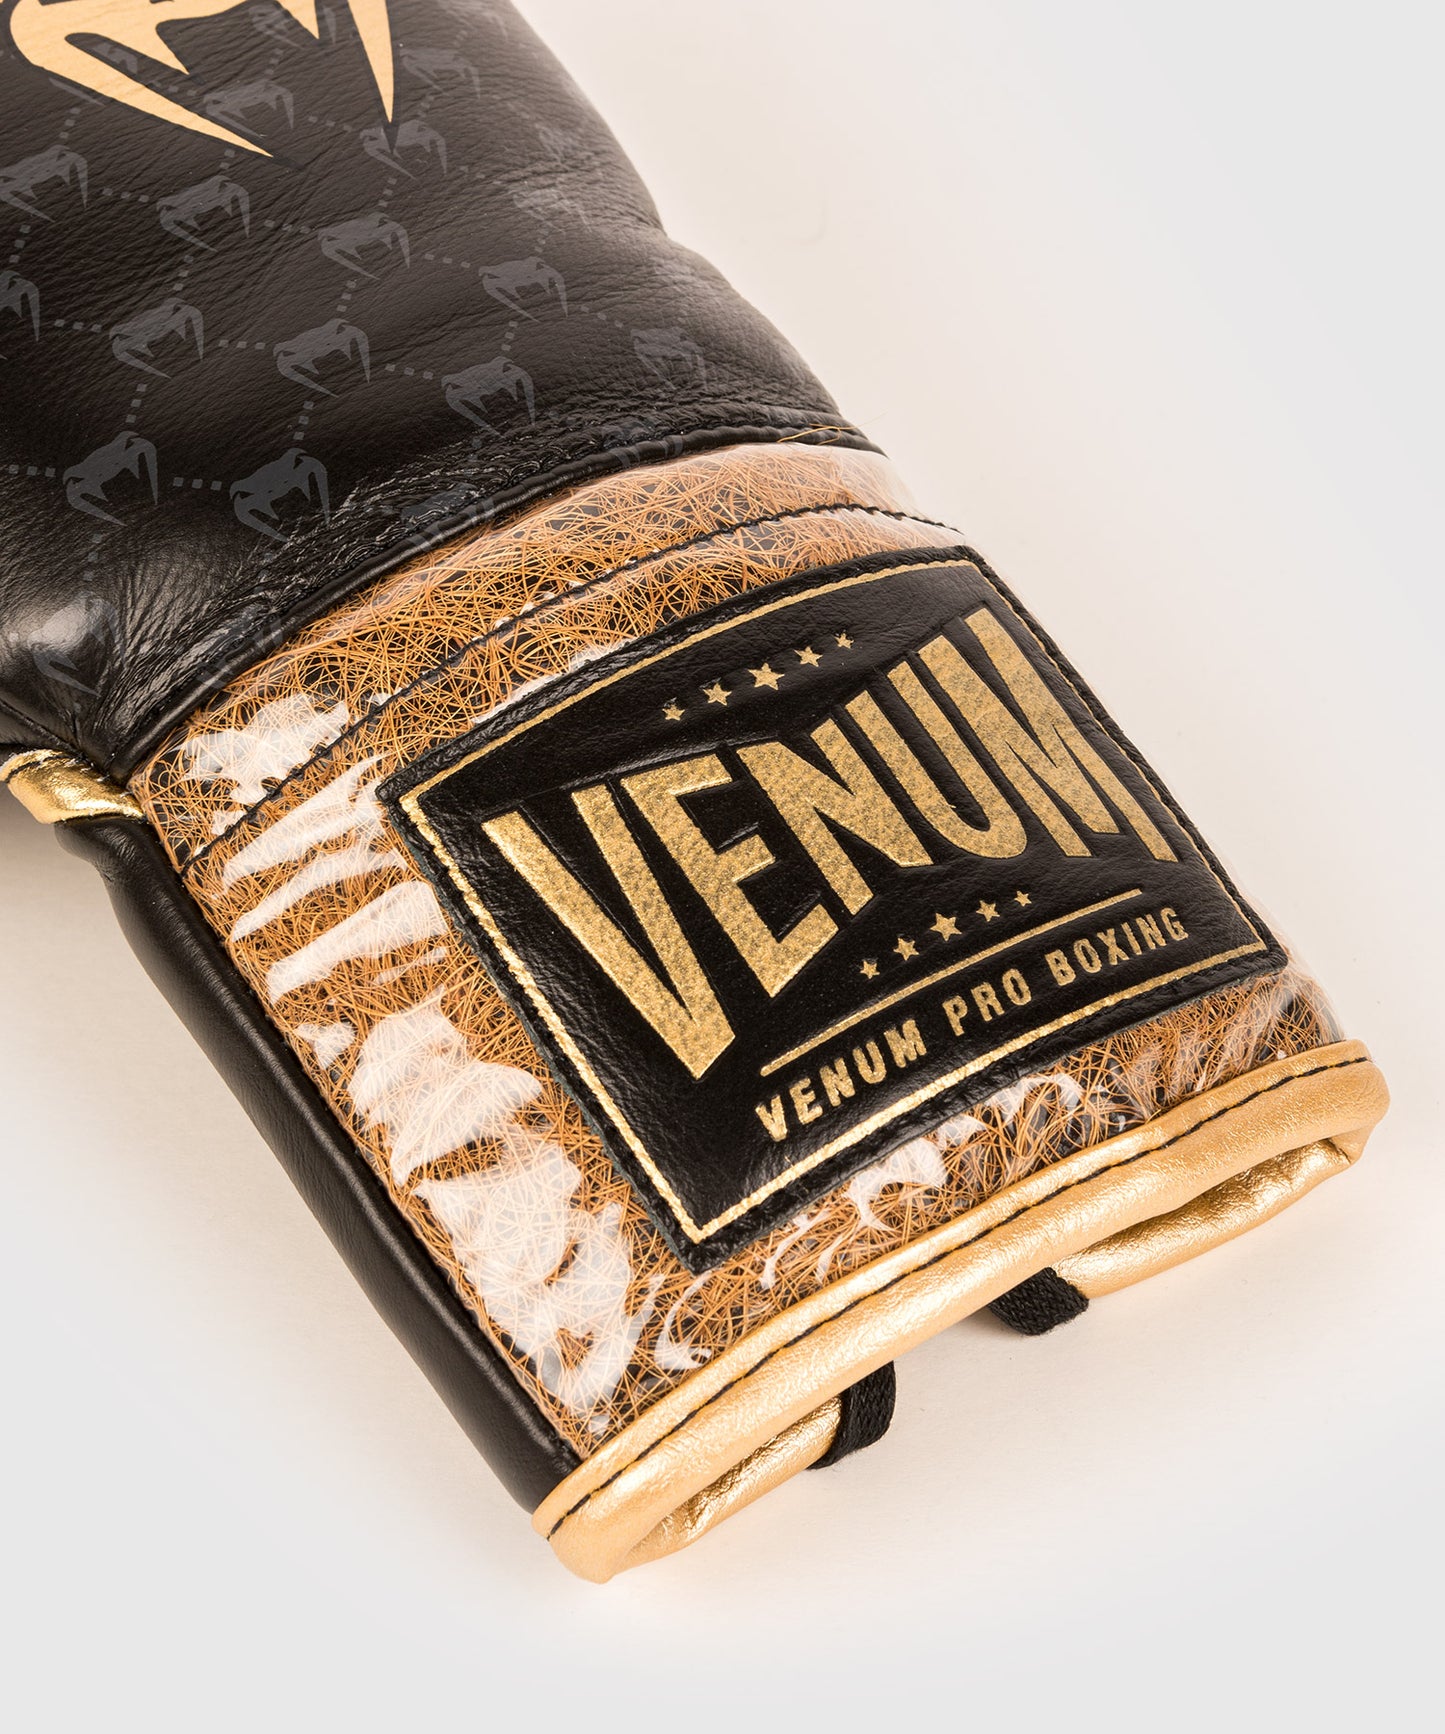 Venum Coco Monogram Pro Boxhandschuhe mit Schnürsenkeln - Intensiv Schwarz